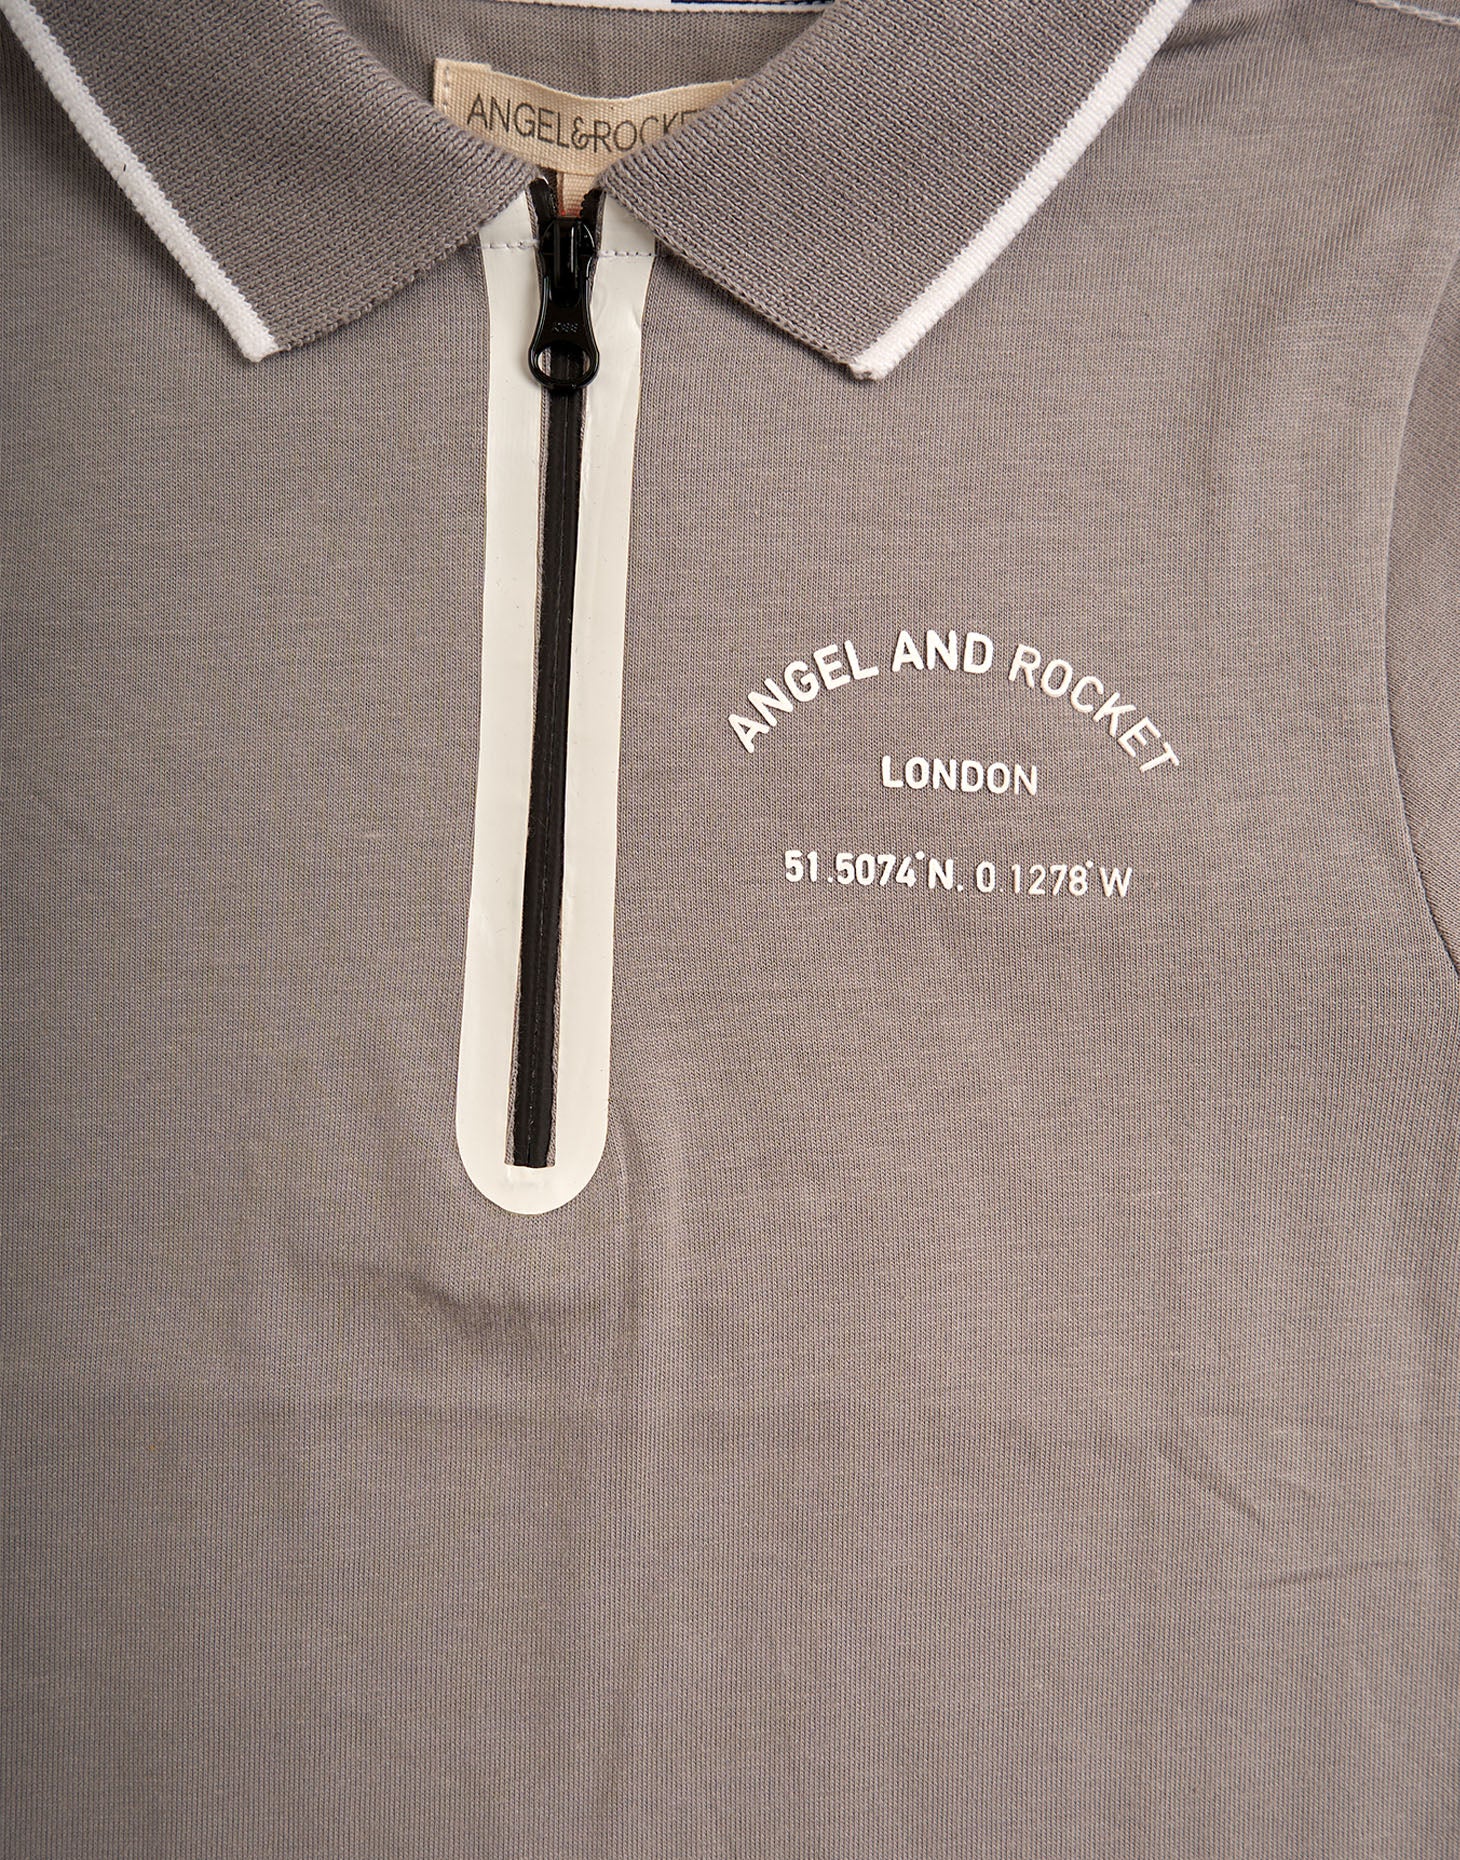 Boys Sporty Polo Collar Grey T-Shirt